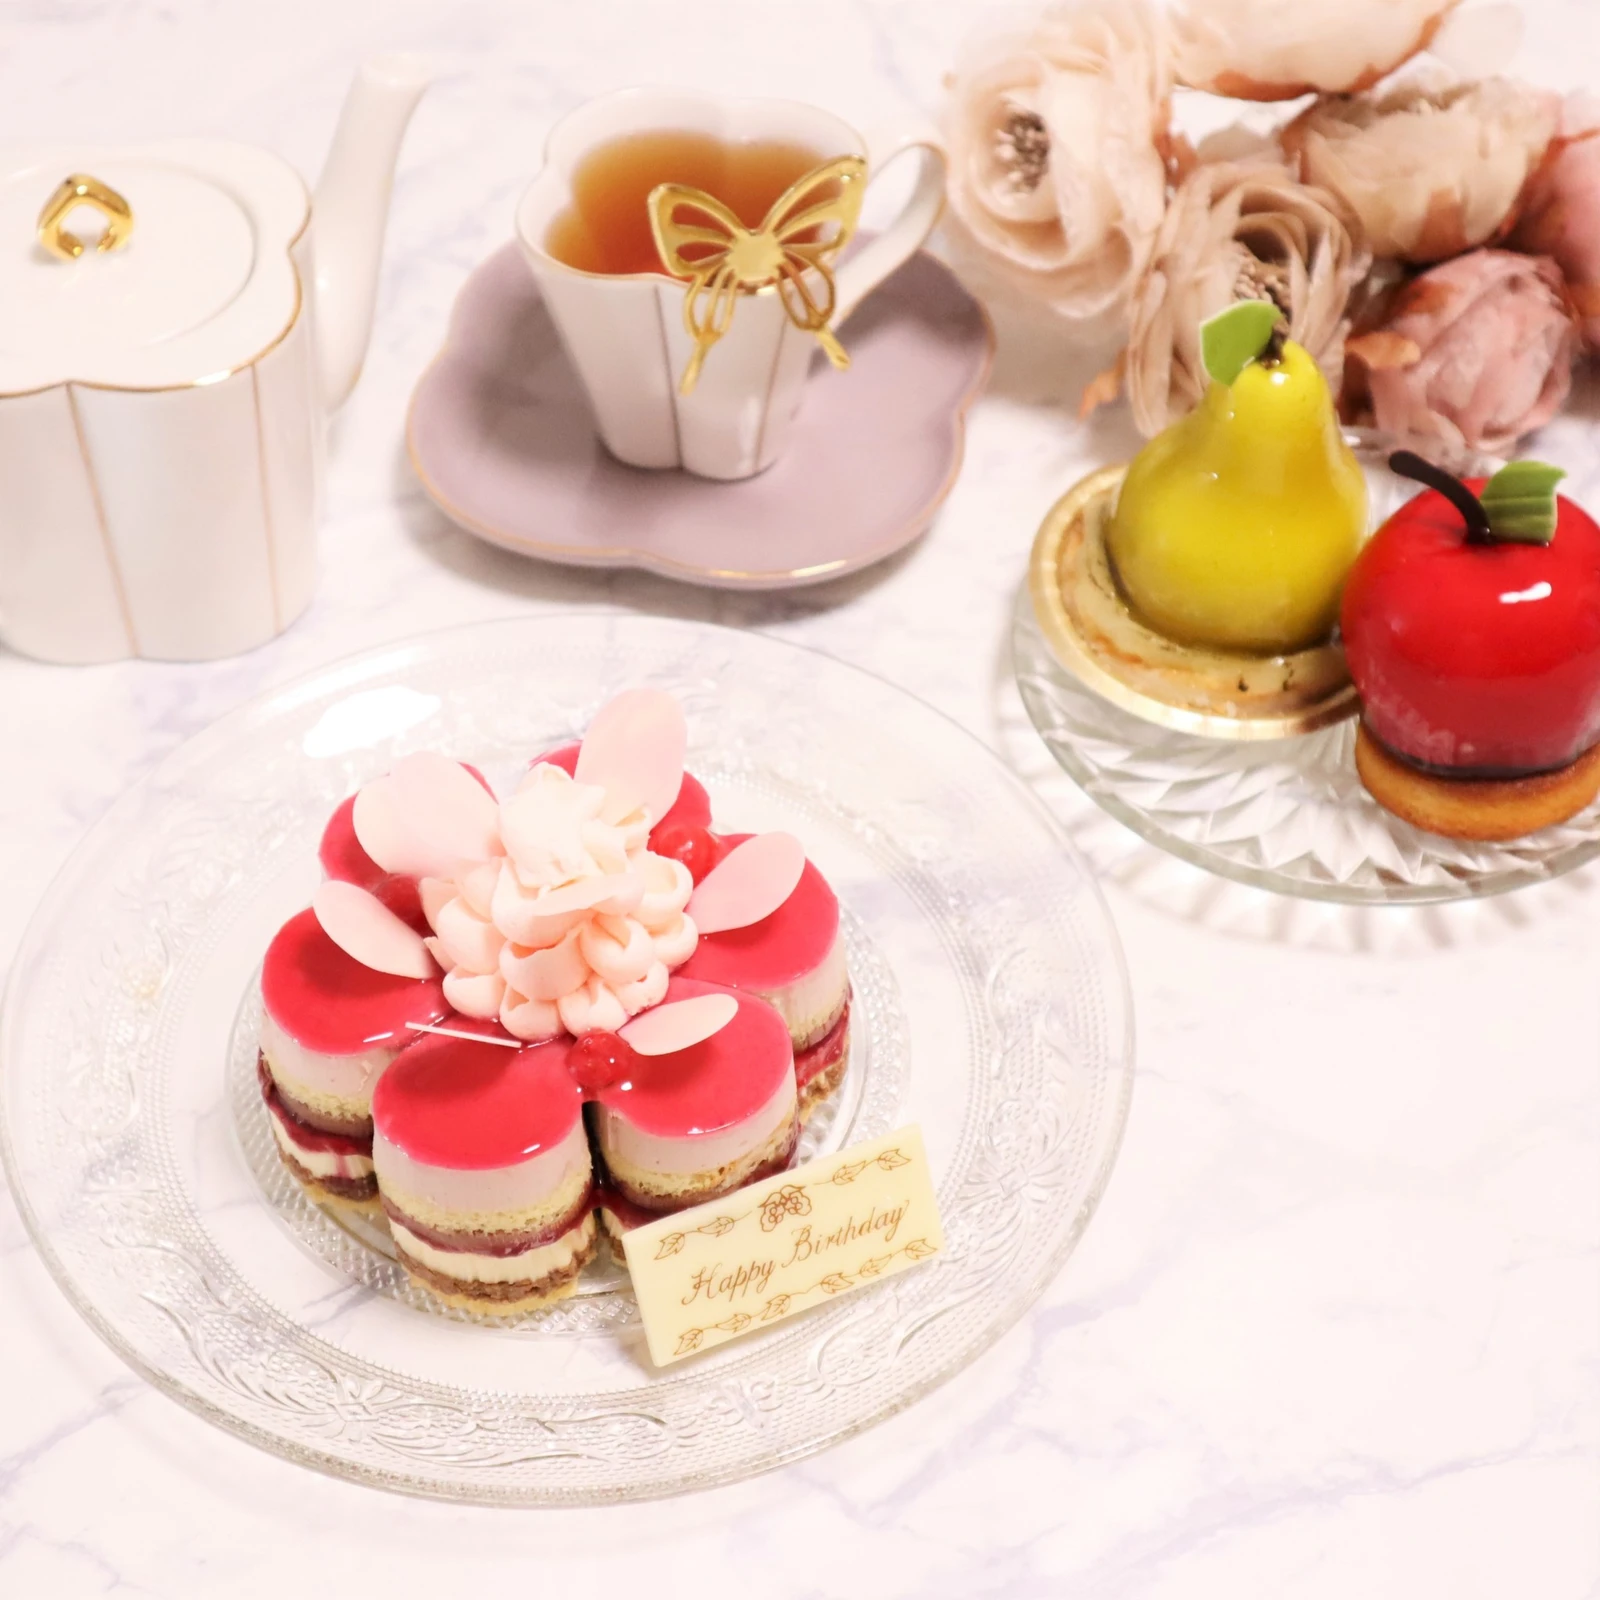 インスタ映えスイーツ フルーツやフラワーモチーフのフレッシュケーキでお祝い 久保居亜由美が投稿したフォトブック Lemon8